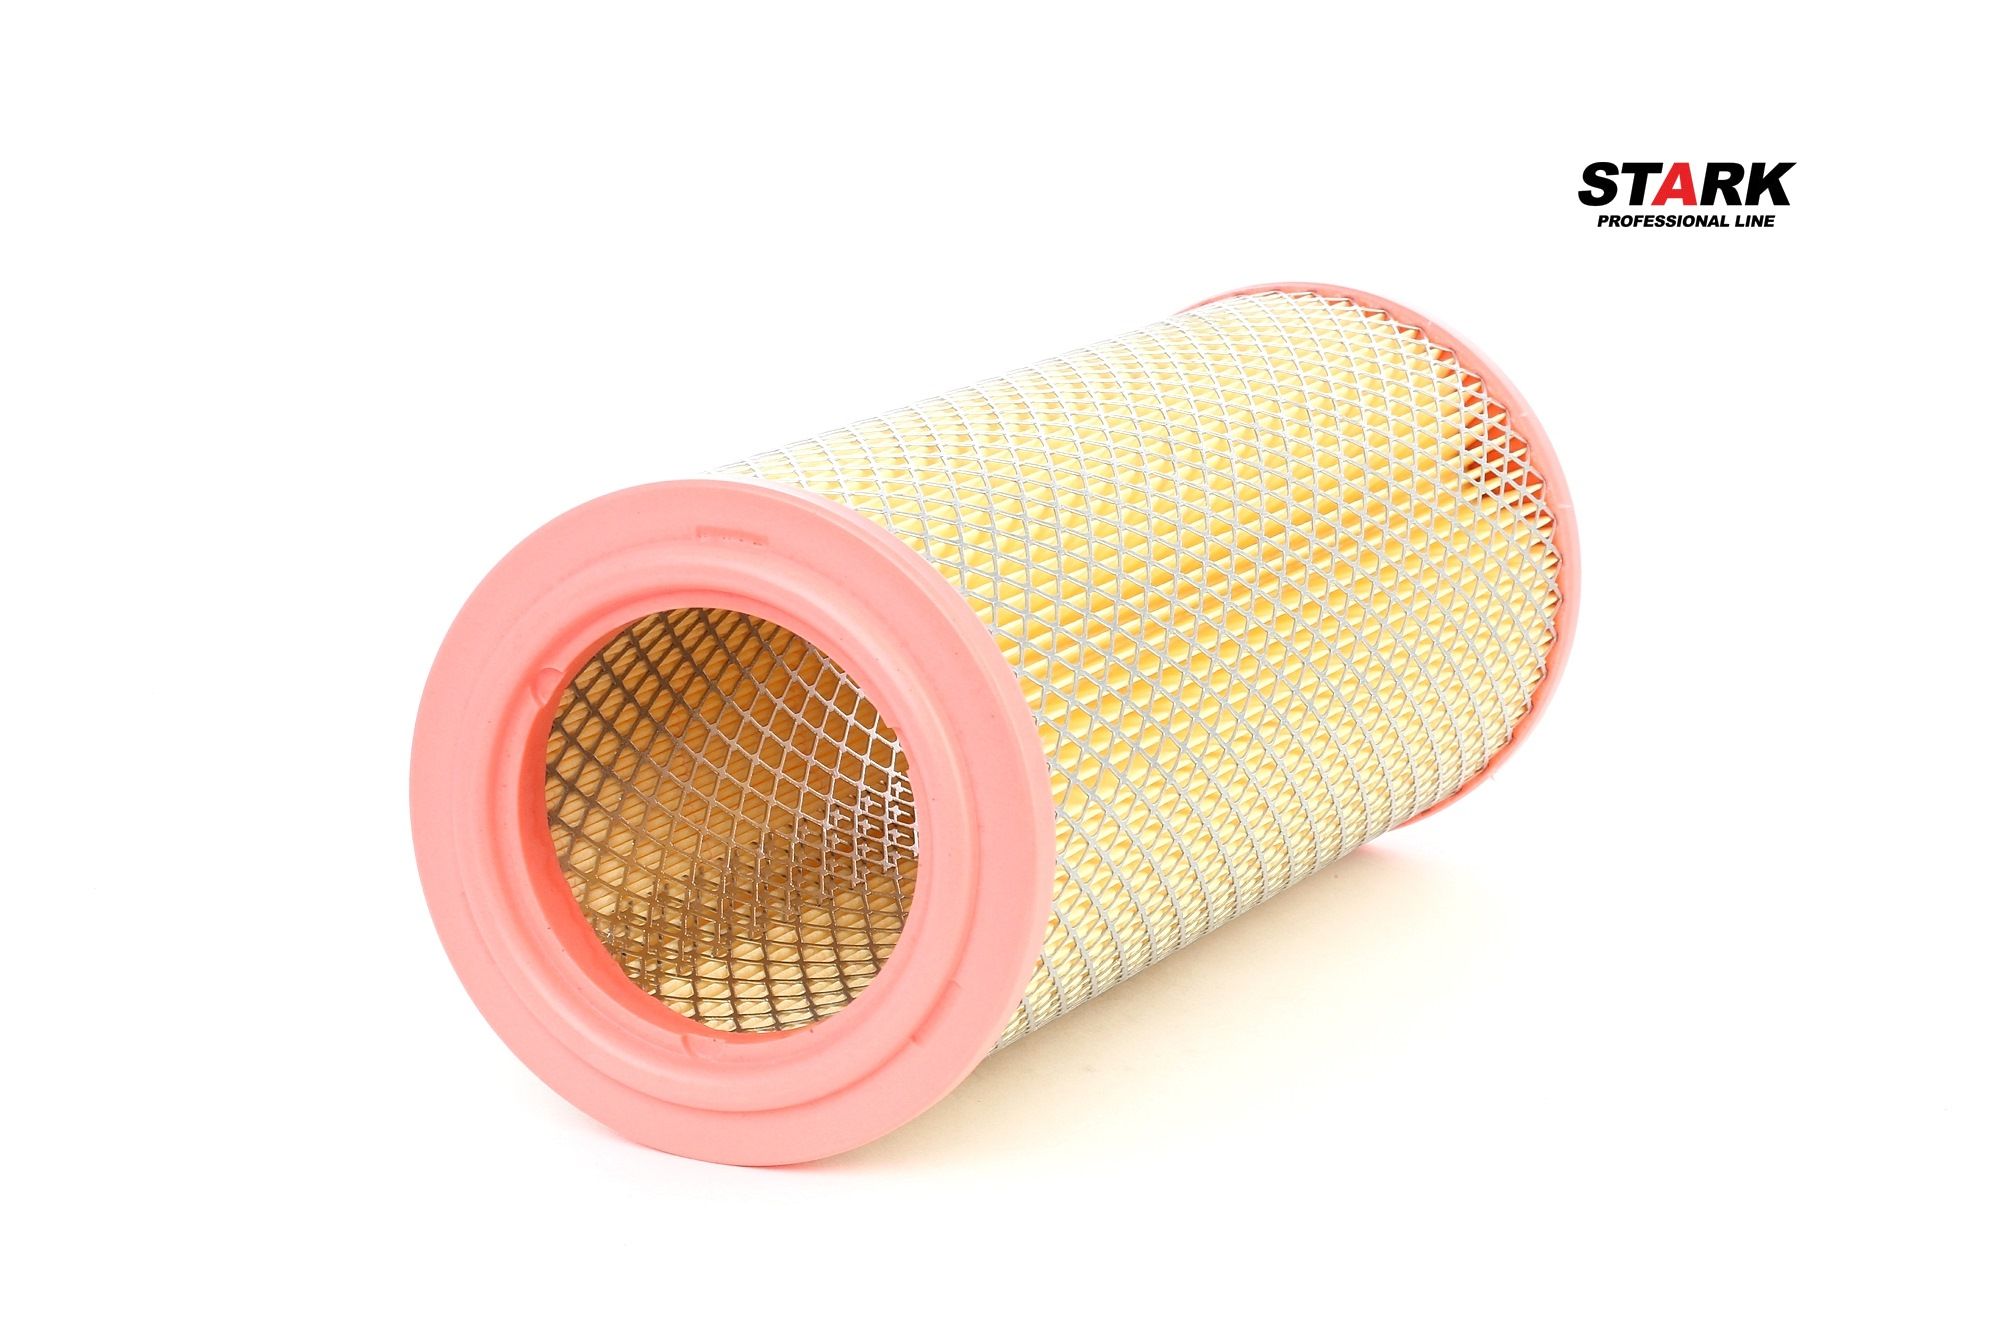 STARK 269mm, 107mm, Filter Insert Height: 269mm Engine air filter SKAF-0060212 buy